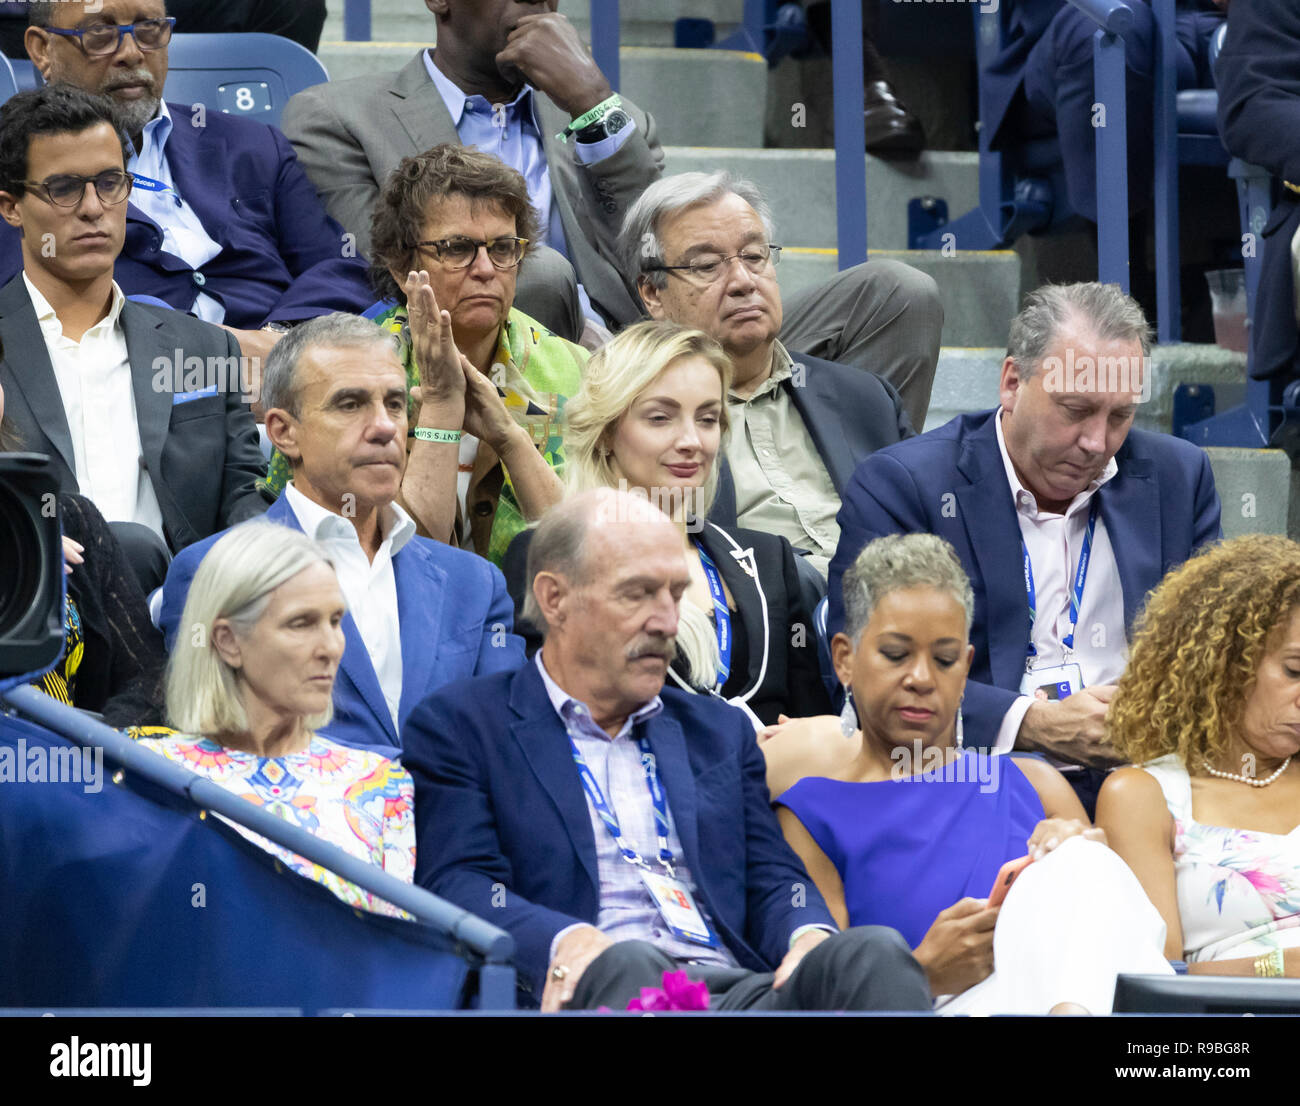 New York, NY - 9 septembre 2018 : Antonio Guterres assiste à la finale masculine de seul de l'US Open 2018 entre le Paris de la Serbie et Juan Martin del Potro, de l'Argentine à l'USTA Billie Jean King National Tennis Center Banque D'Images